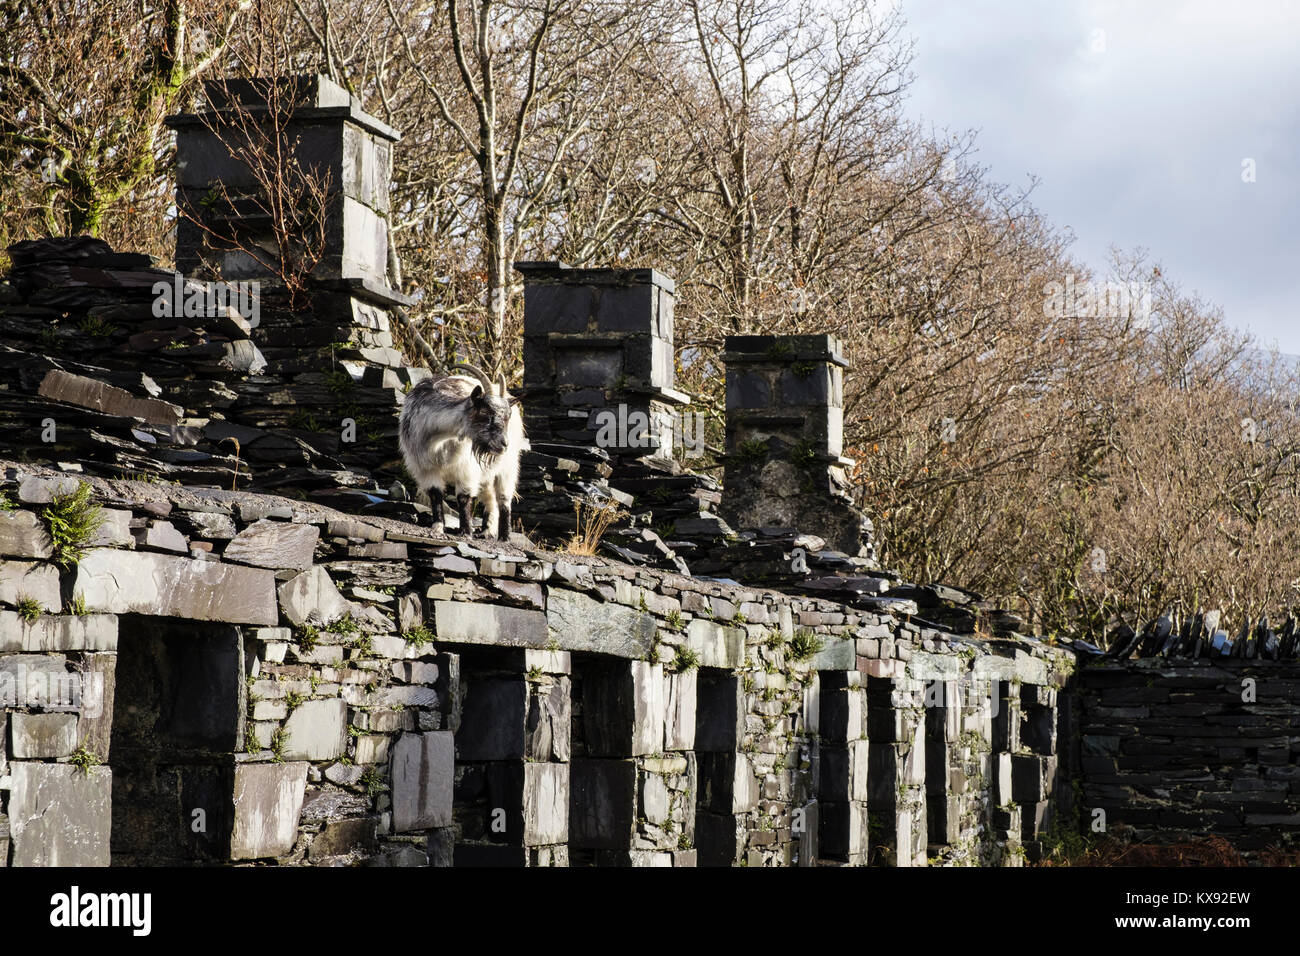 Wildziege auf Ruinen von Anglesey Barracks quarrymen's Cottages in Dinorwig-Schieferbruch im Snowdonia National Park Dinorwic Gwynedd Wales UK Stockfoto